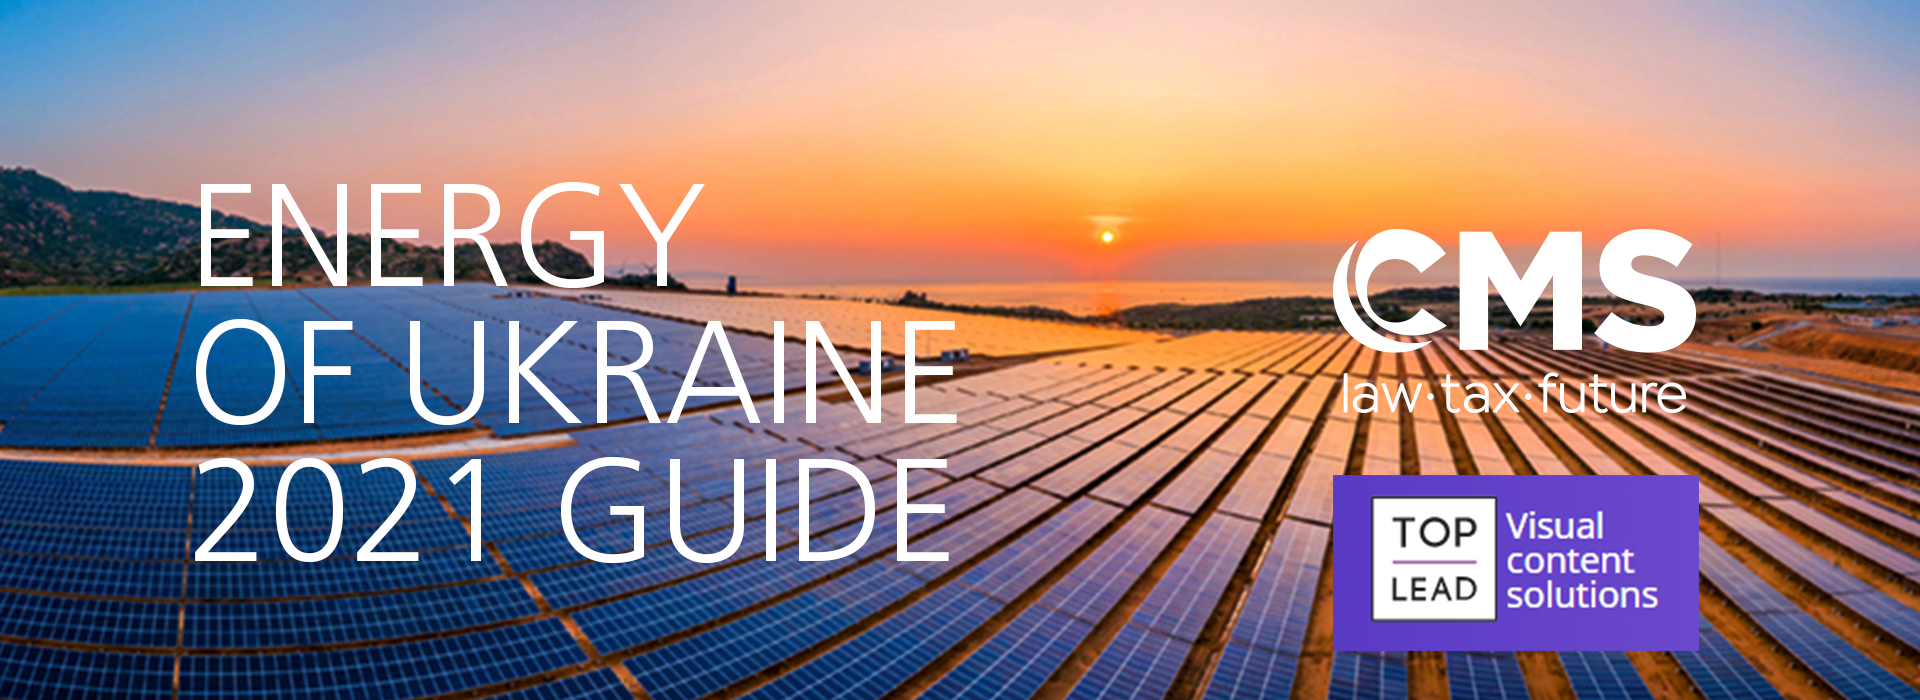 Energy in Ukraine 2021 Guide Part II